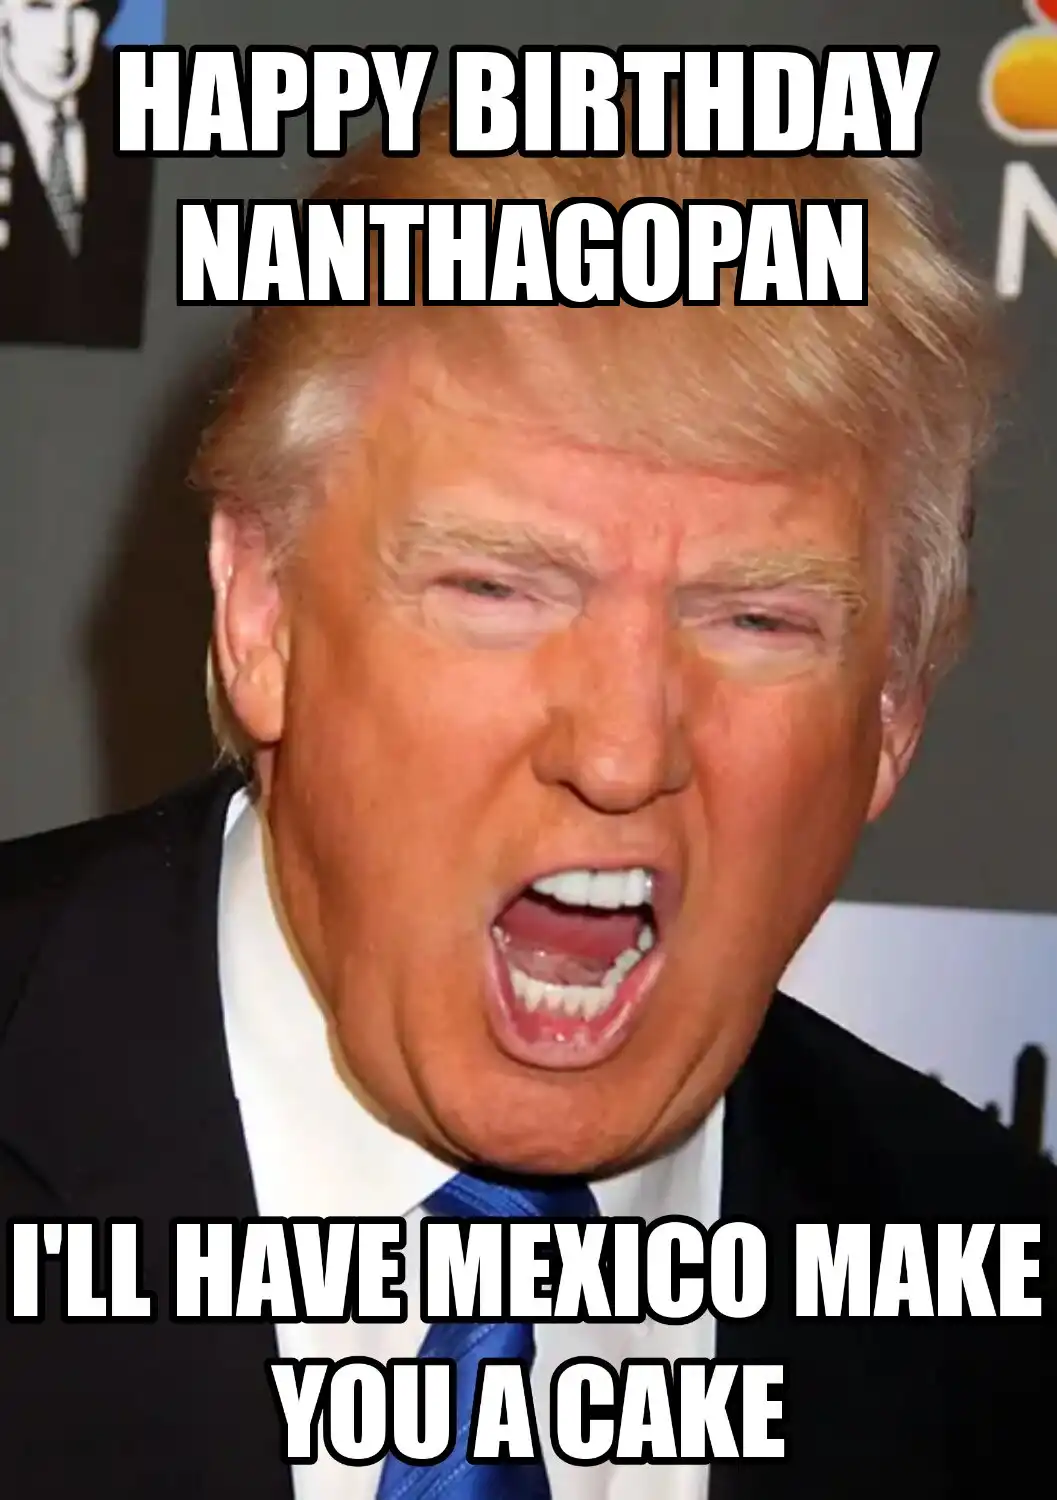 Happy Birthday Nanthagopan Mexico Make You A Cake Meme